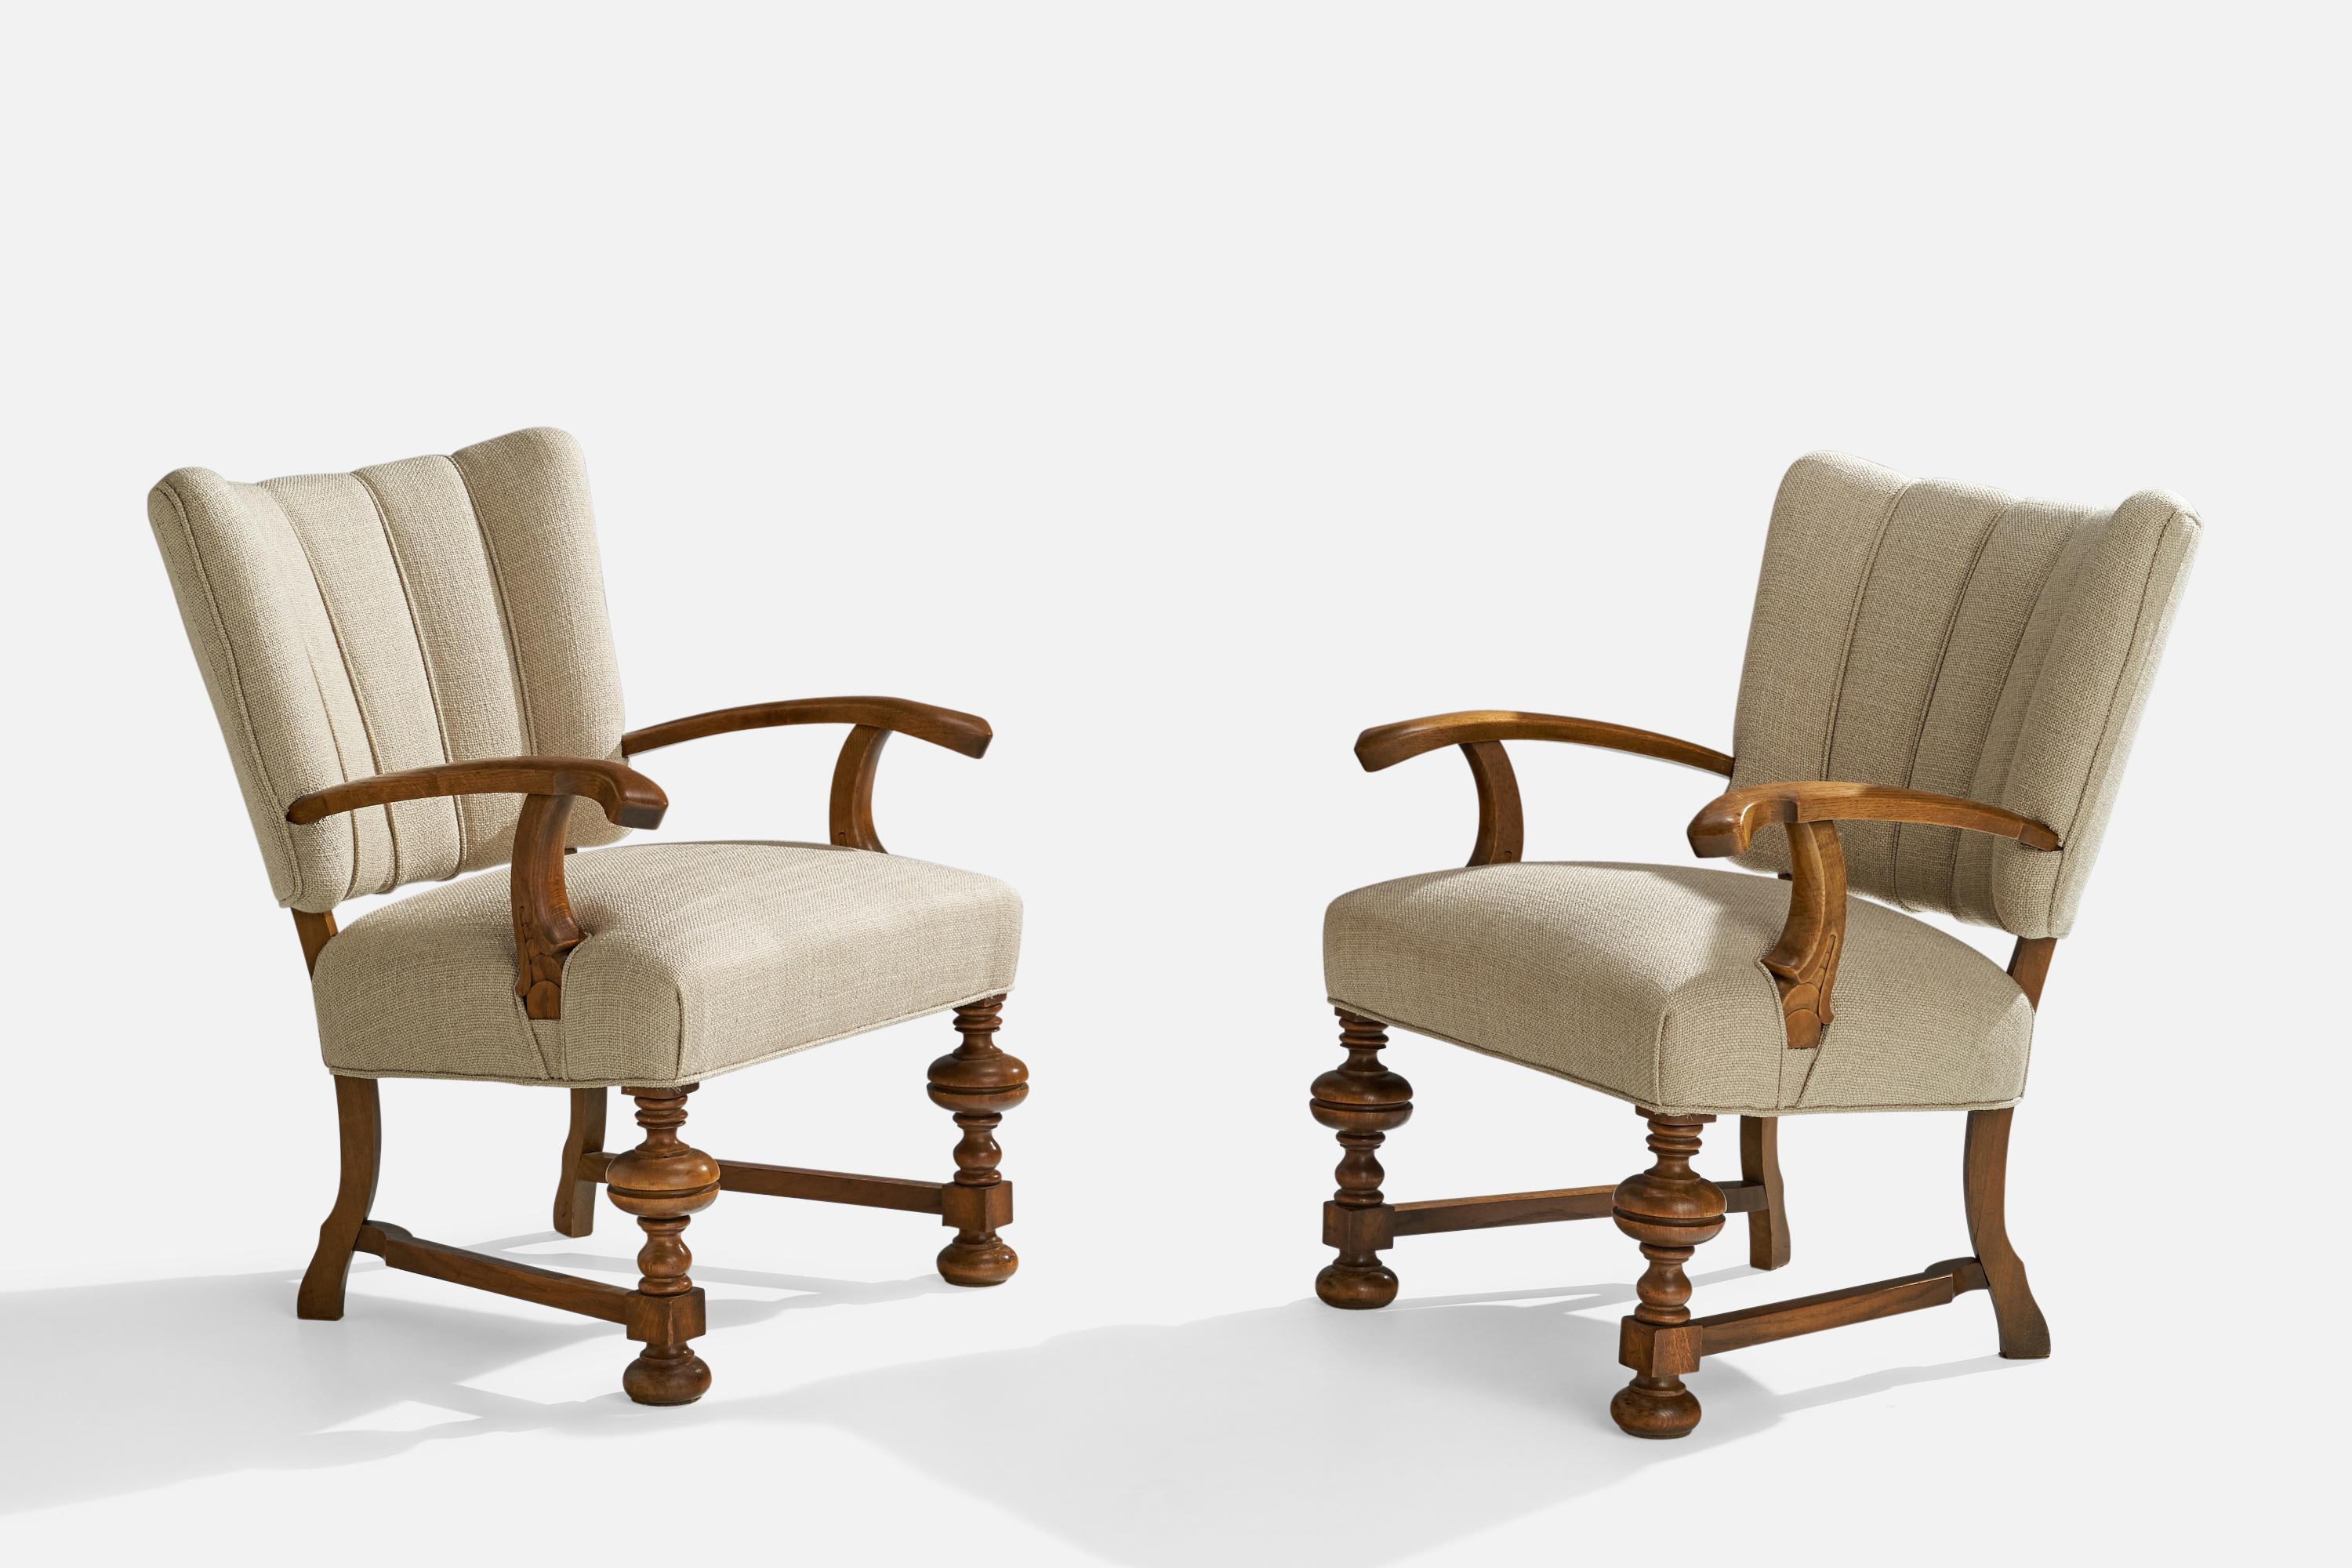 Ein Paar Lounge-Stühle oder Sessel aus Eiche und cremefarbenem Stoff, entworfen und hergestellt in Dänemark, um 1930.

Sitzhöhe 17,5